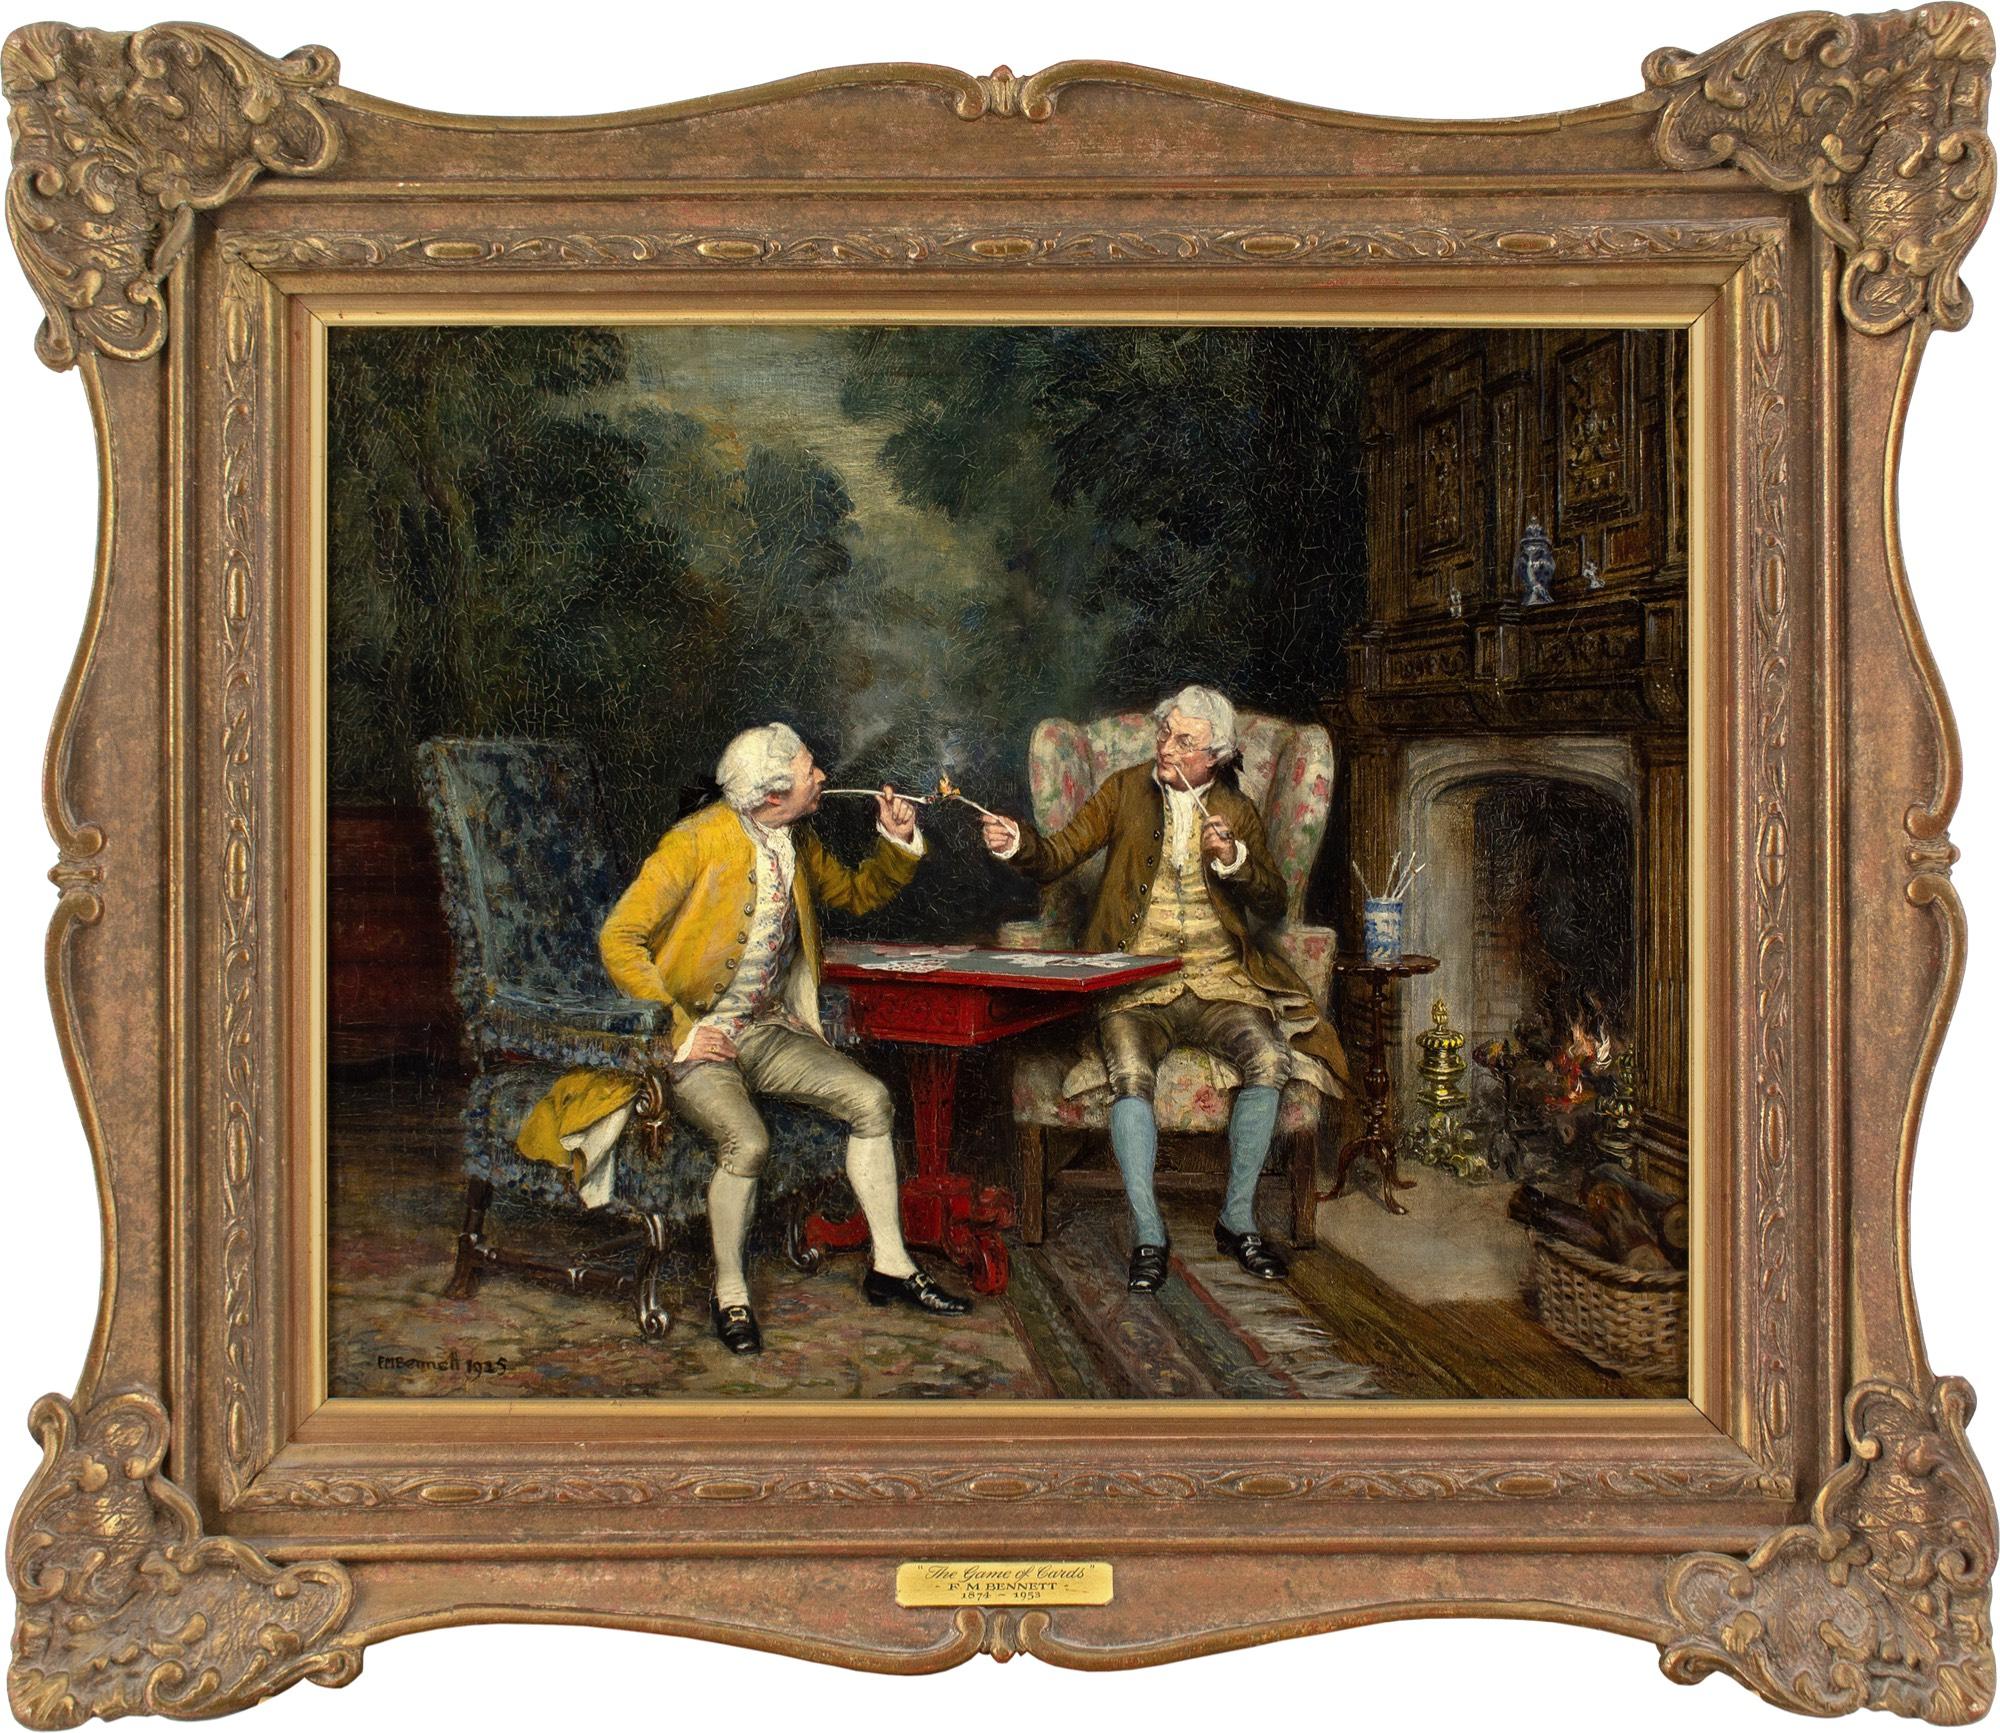 Dieses schöne Ölgemälde des britischen Künstlers Frank Moss Bennett (1874-1952) aus dem frühen 20. Jahrhundert zeigt zwei Herren in Perücken, die an einem Feuer Karten spielen.

Frank Moss Bennett war ein bedeutender Maler von Porträts, Architektur